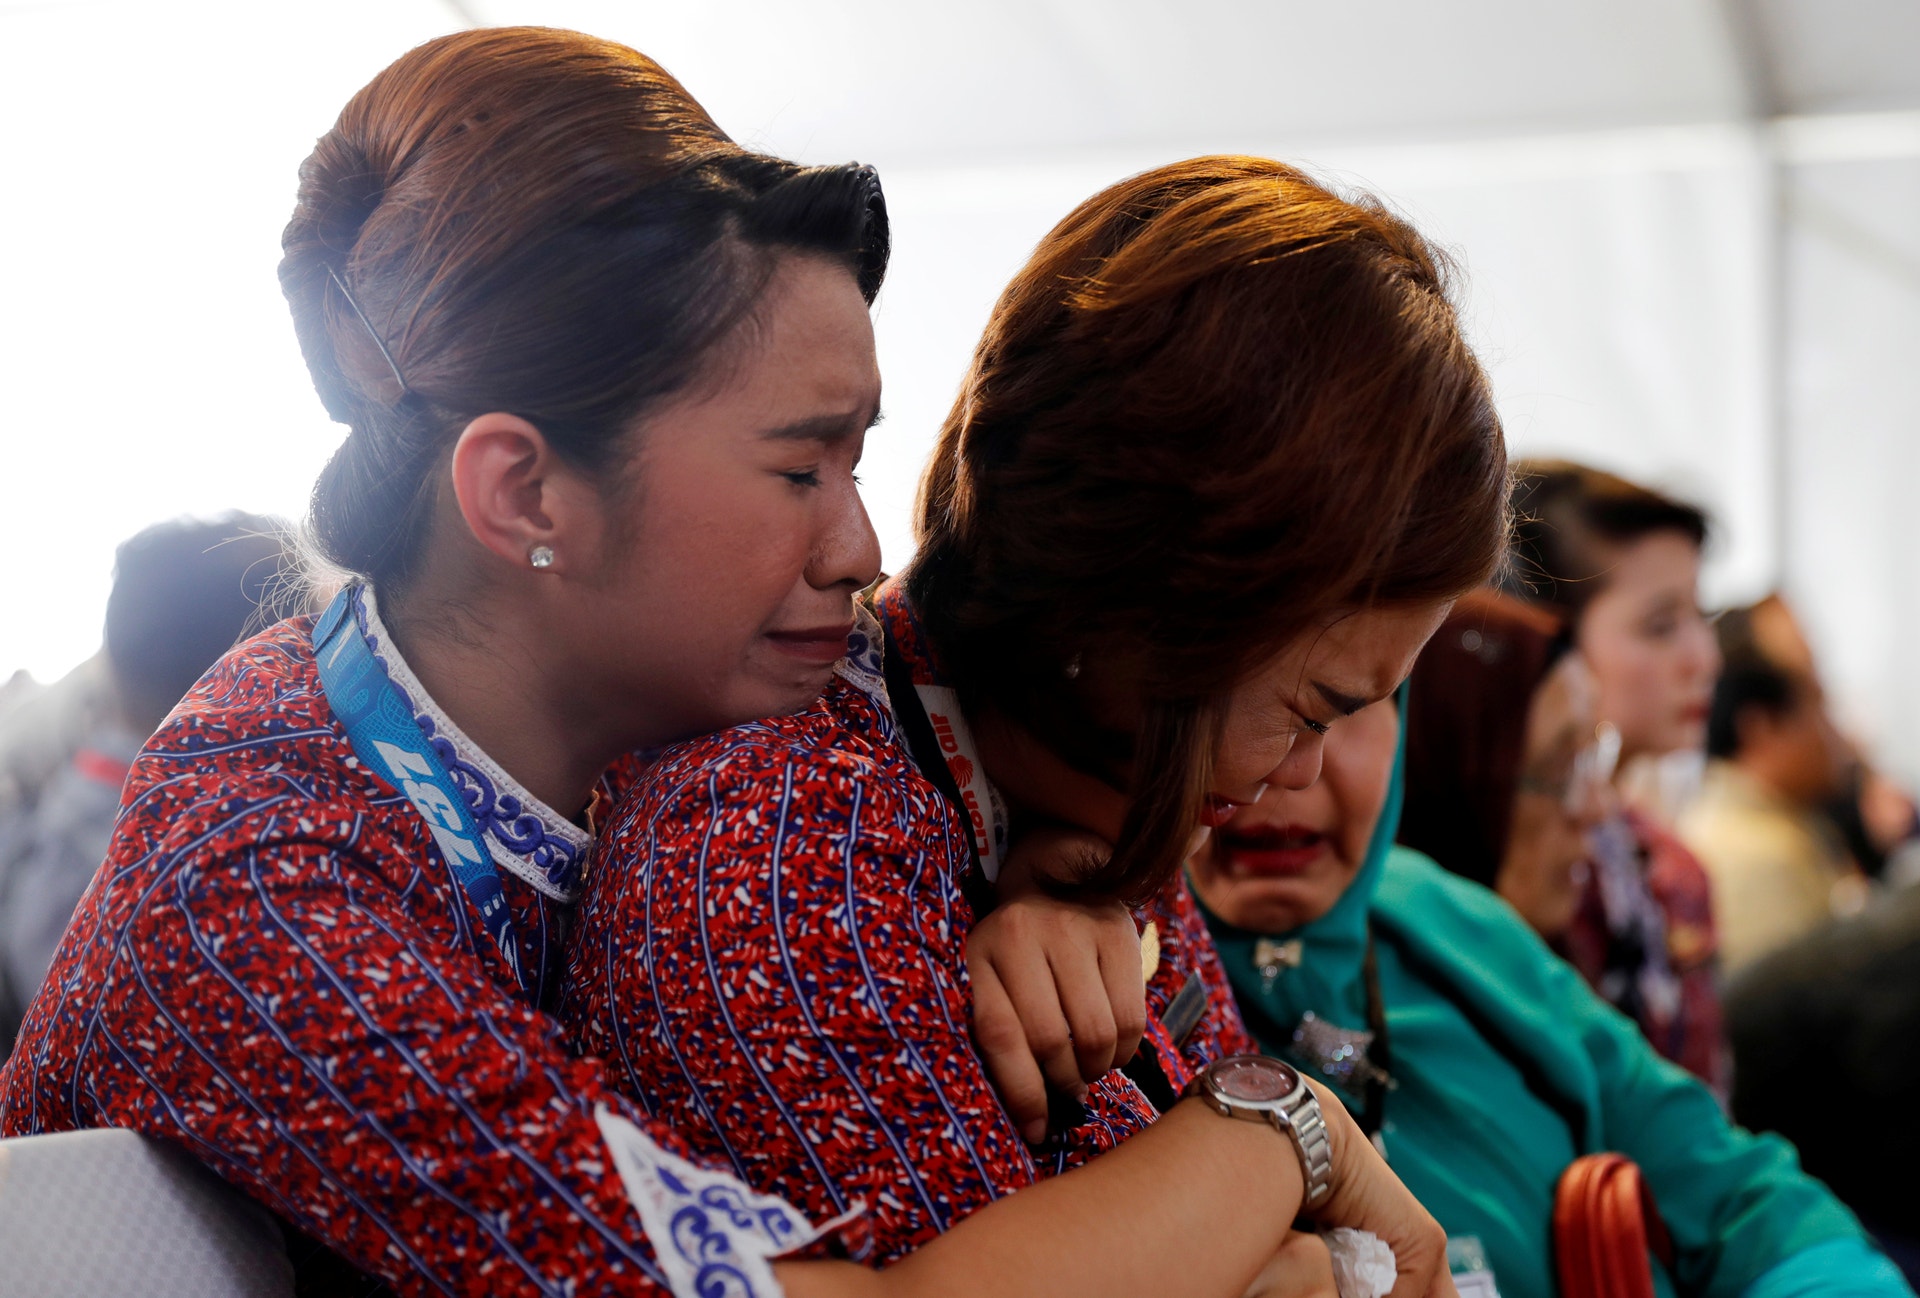  Colegas dos tripulantes do voo 610 choram ao visitar local do acidente. Foto: Beawiharta Beawiharta - Reuters 